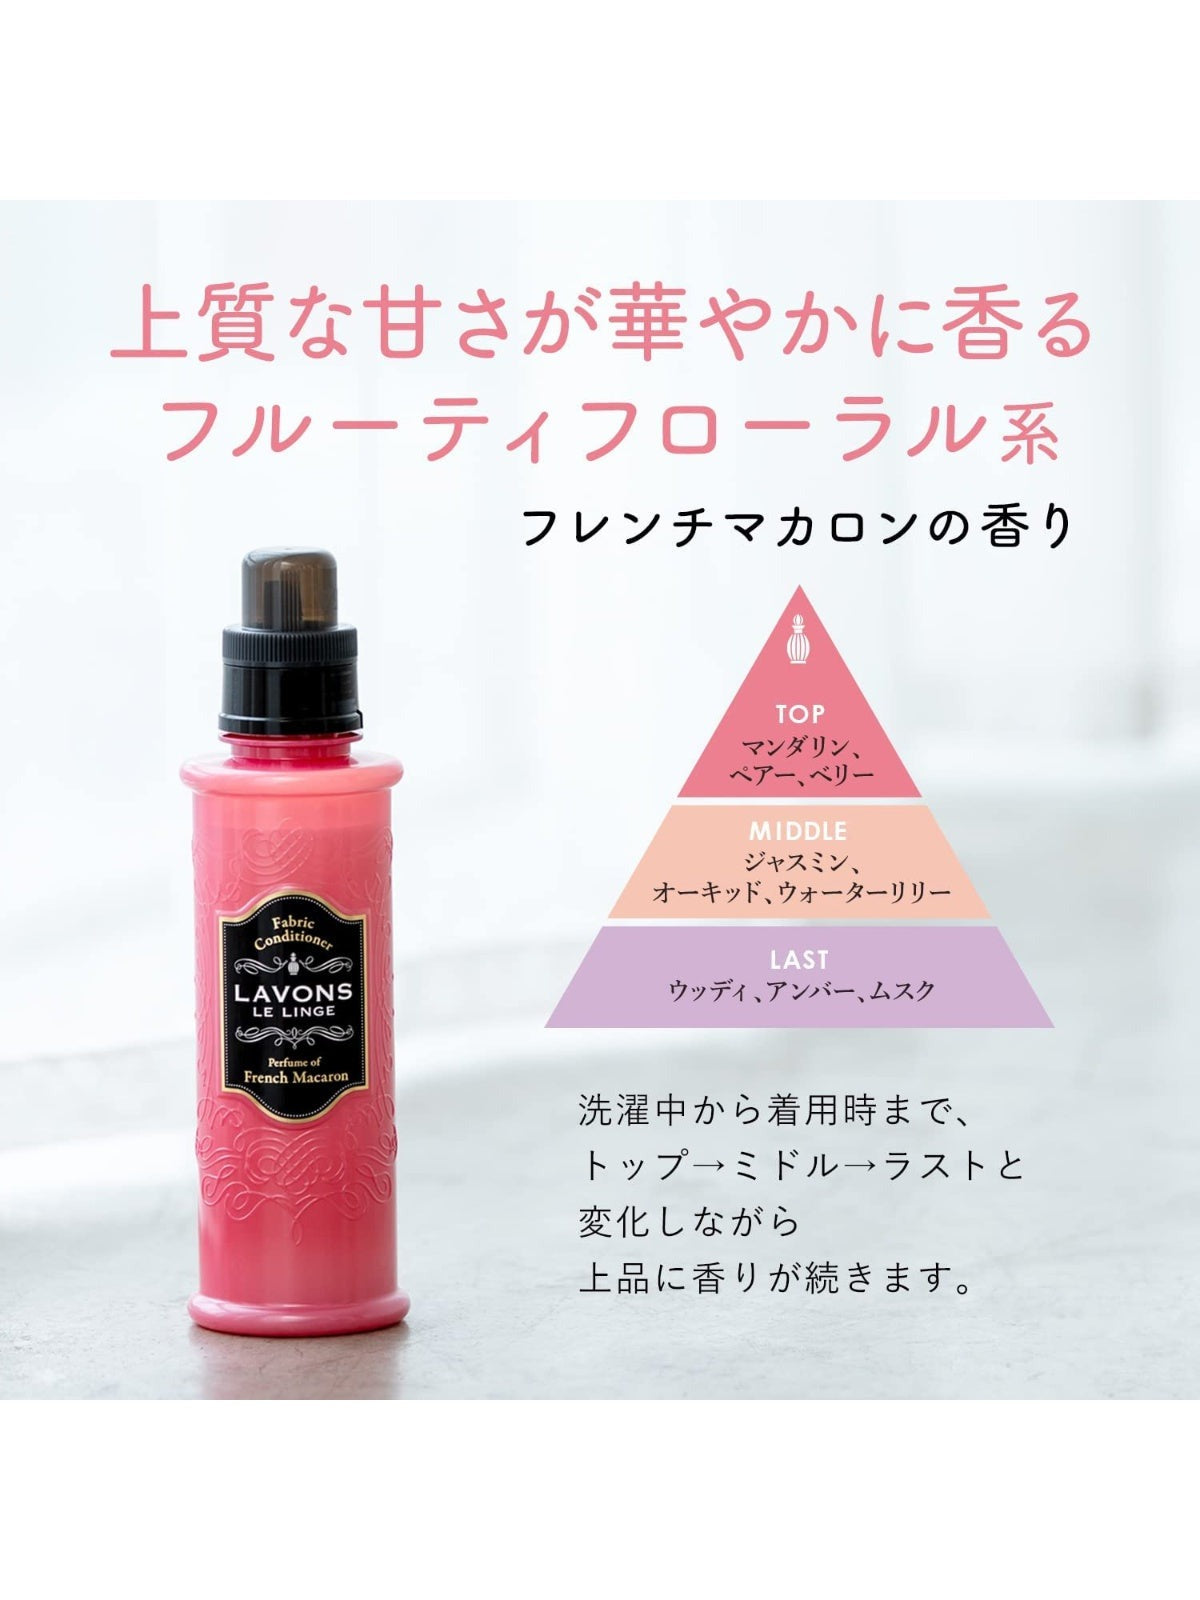 【送料無料】フレンチマカロンの香り アソートセット ラボン